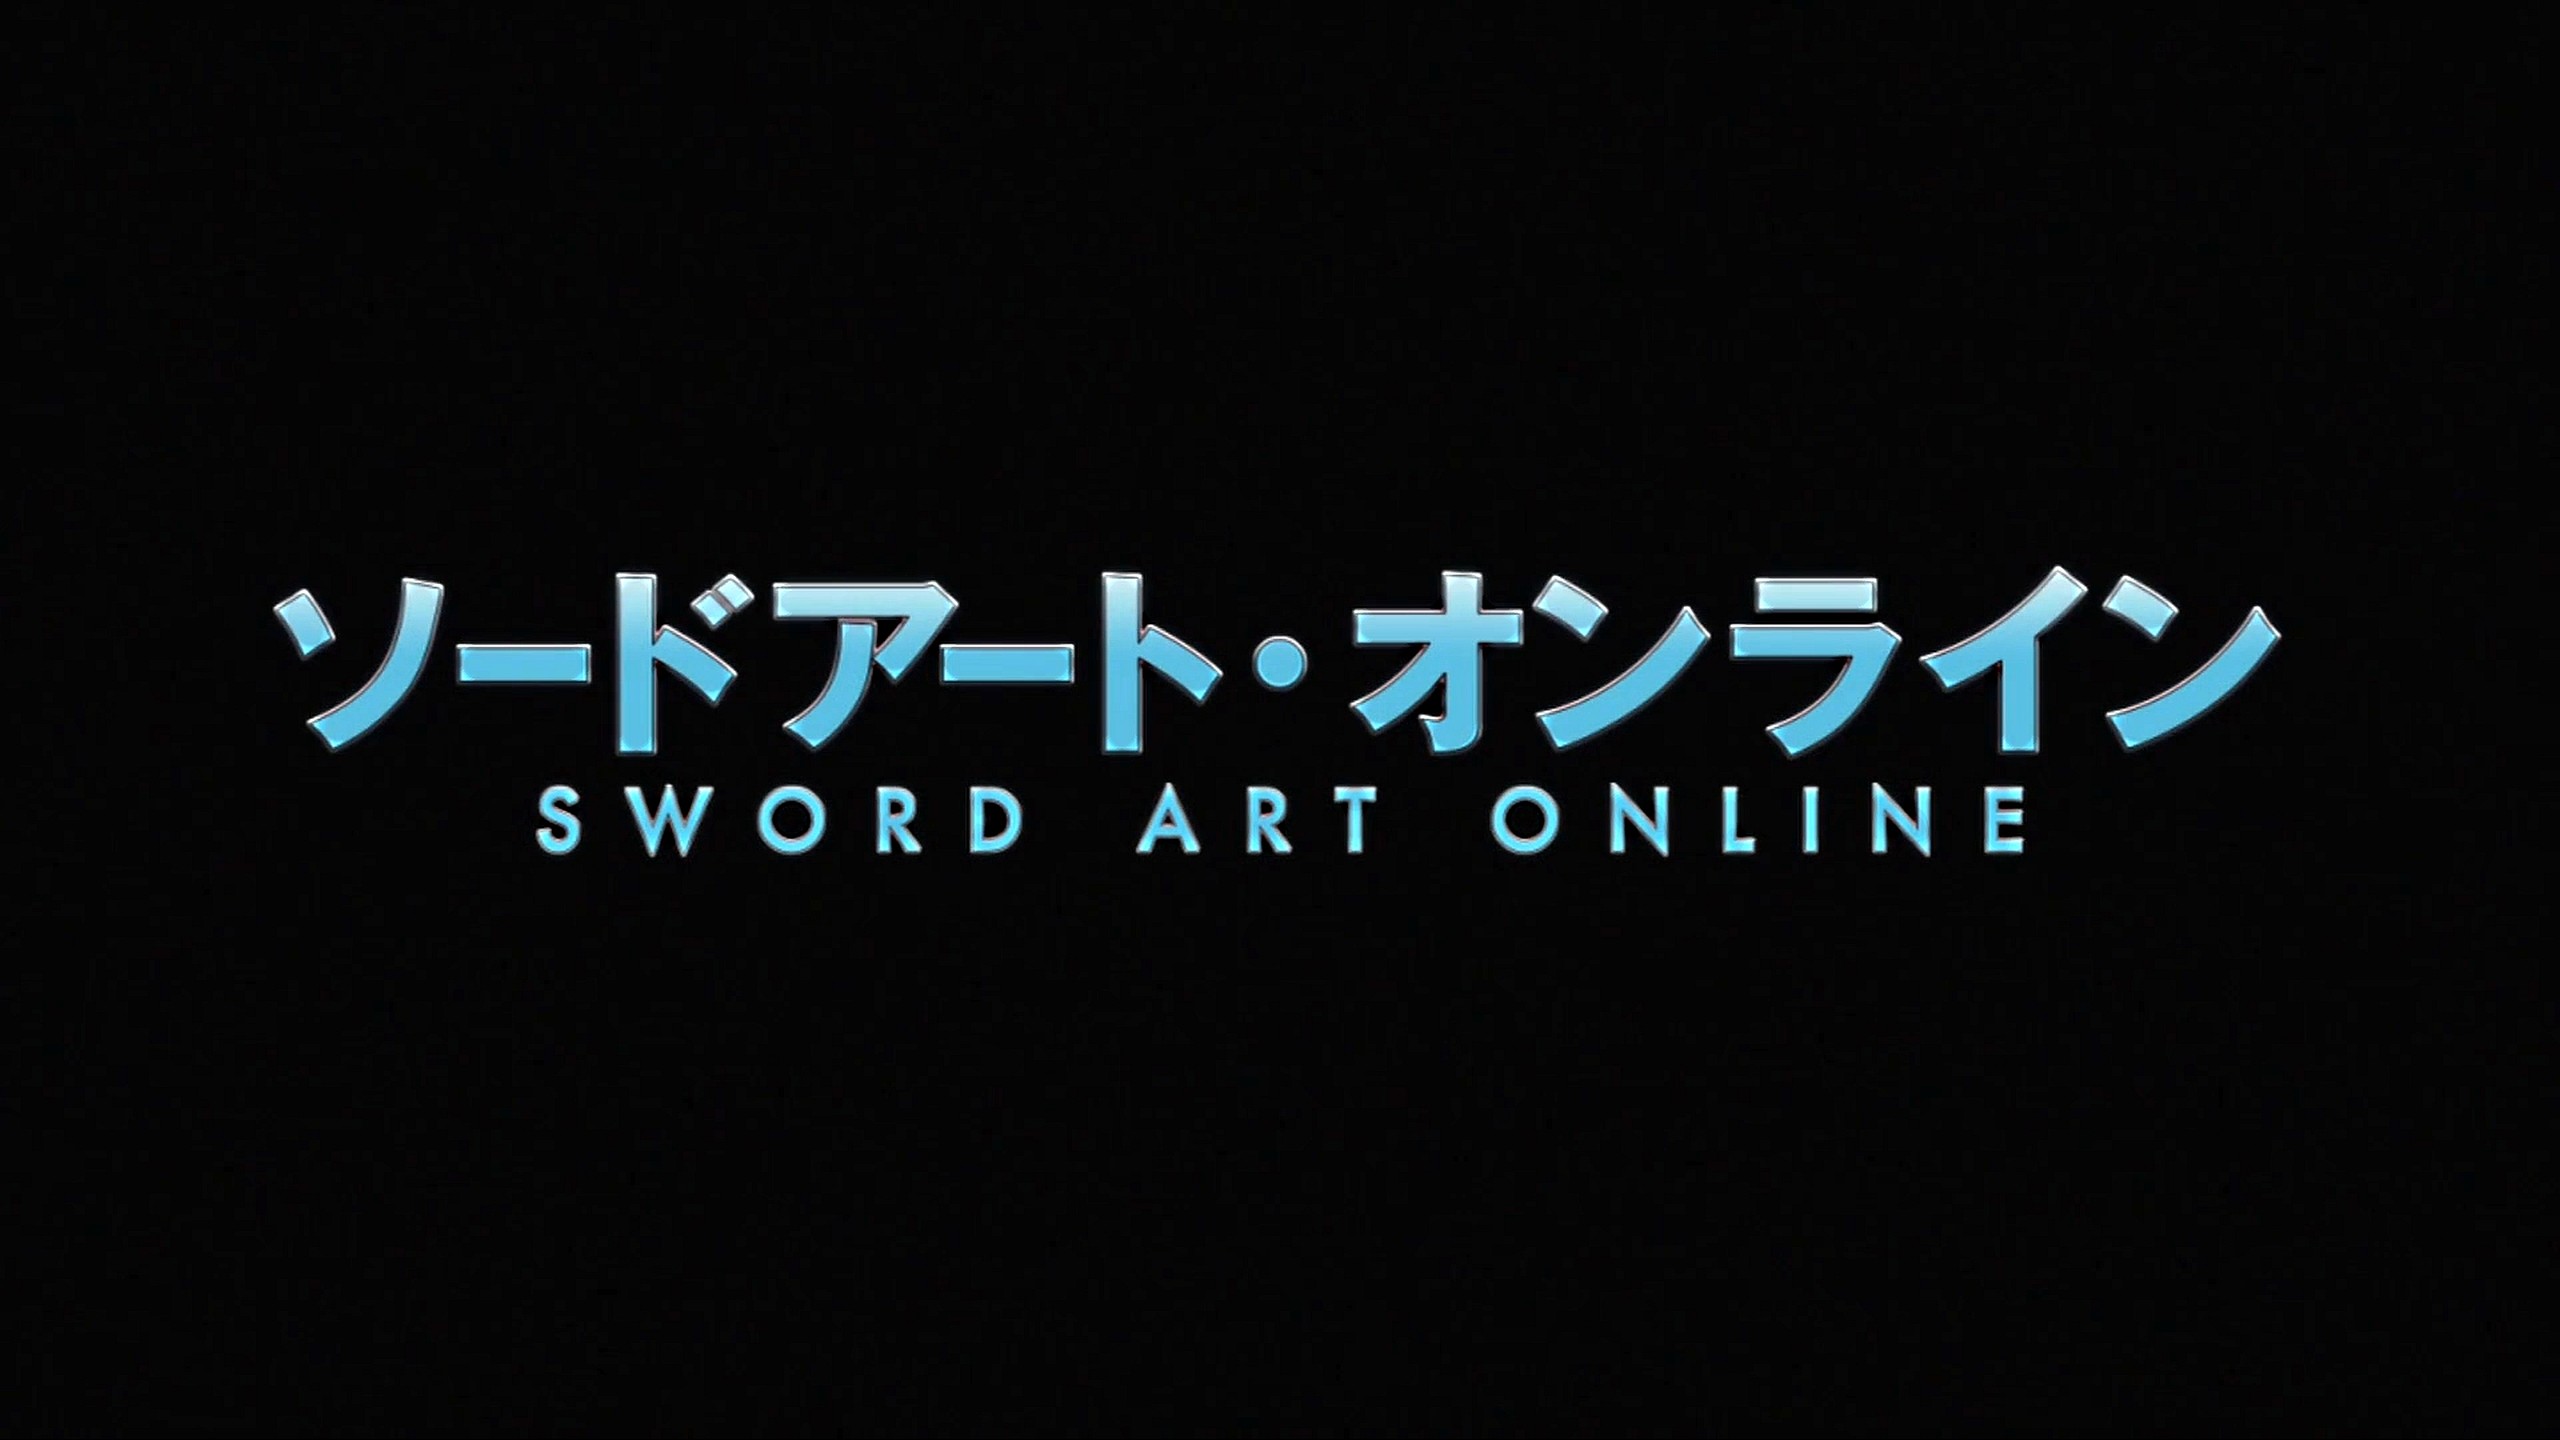 Sword Art Online 2